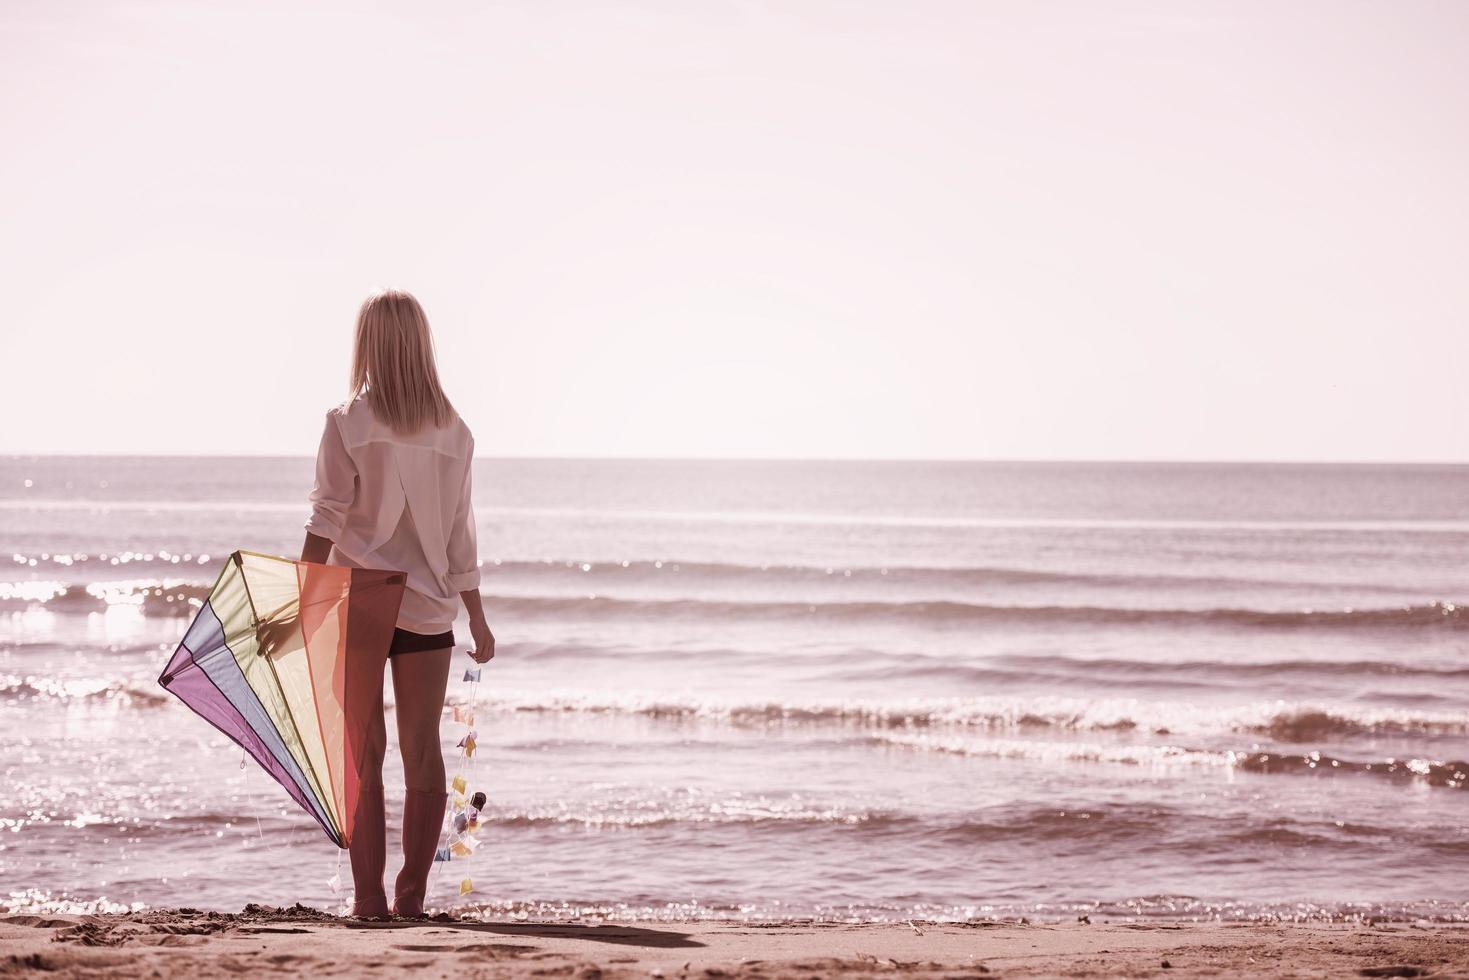 jong vrouw met vlieger Bij strand Aan herfst dag foto